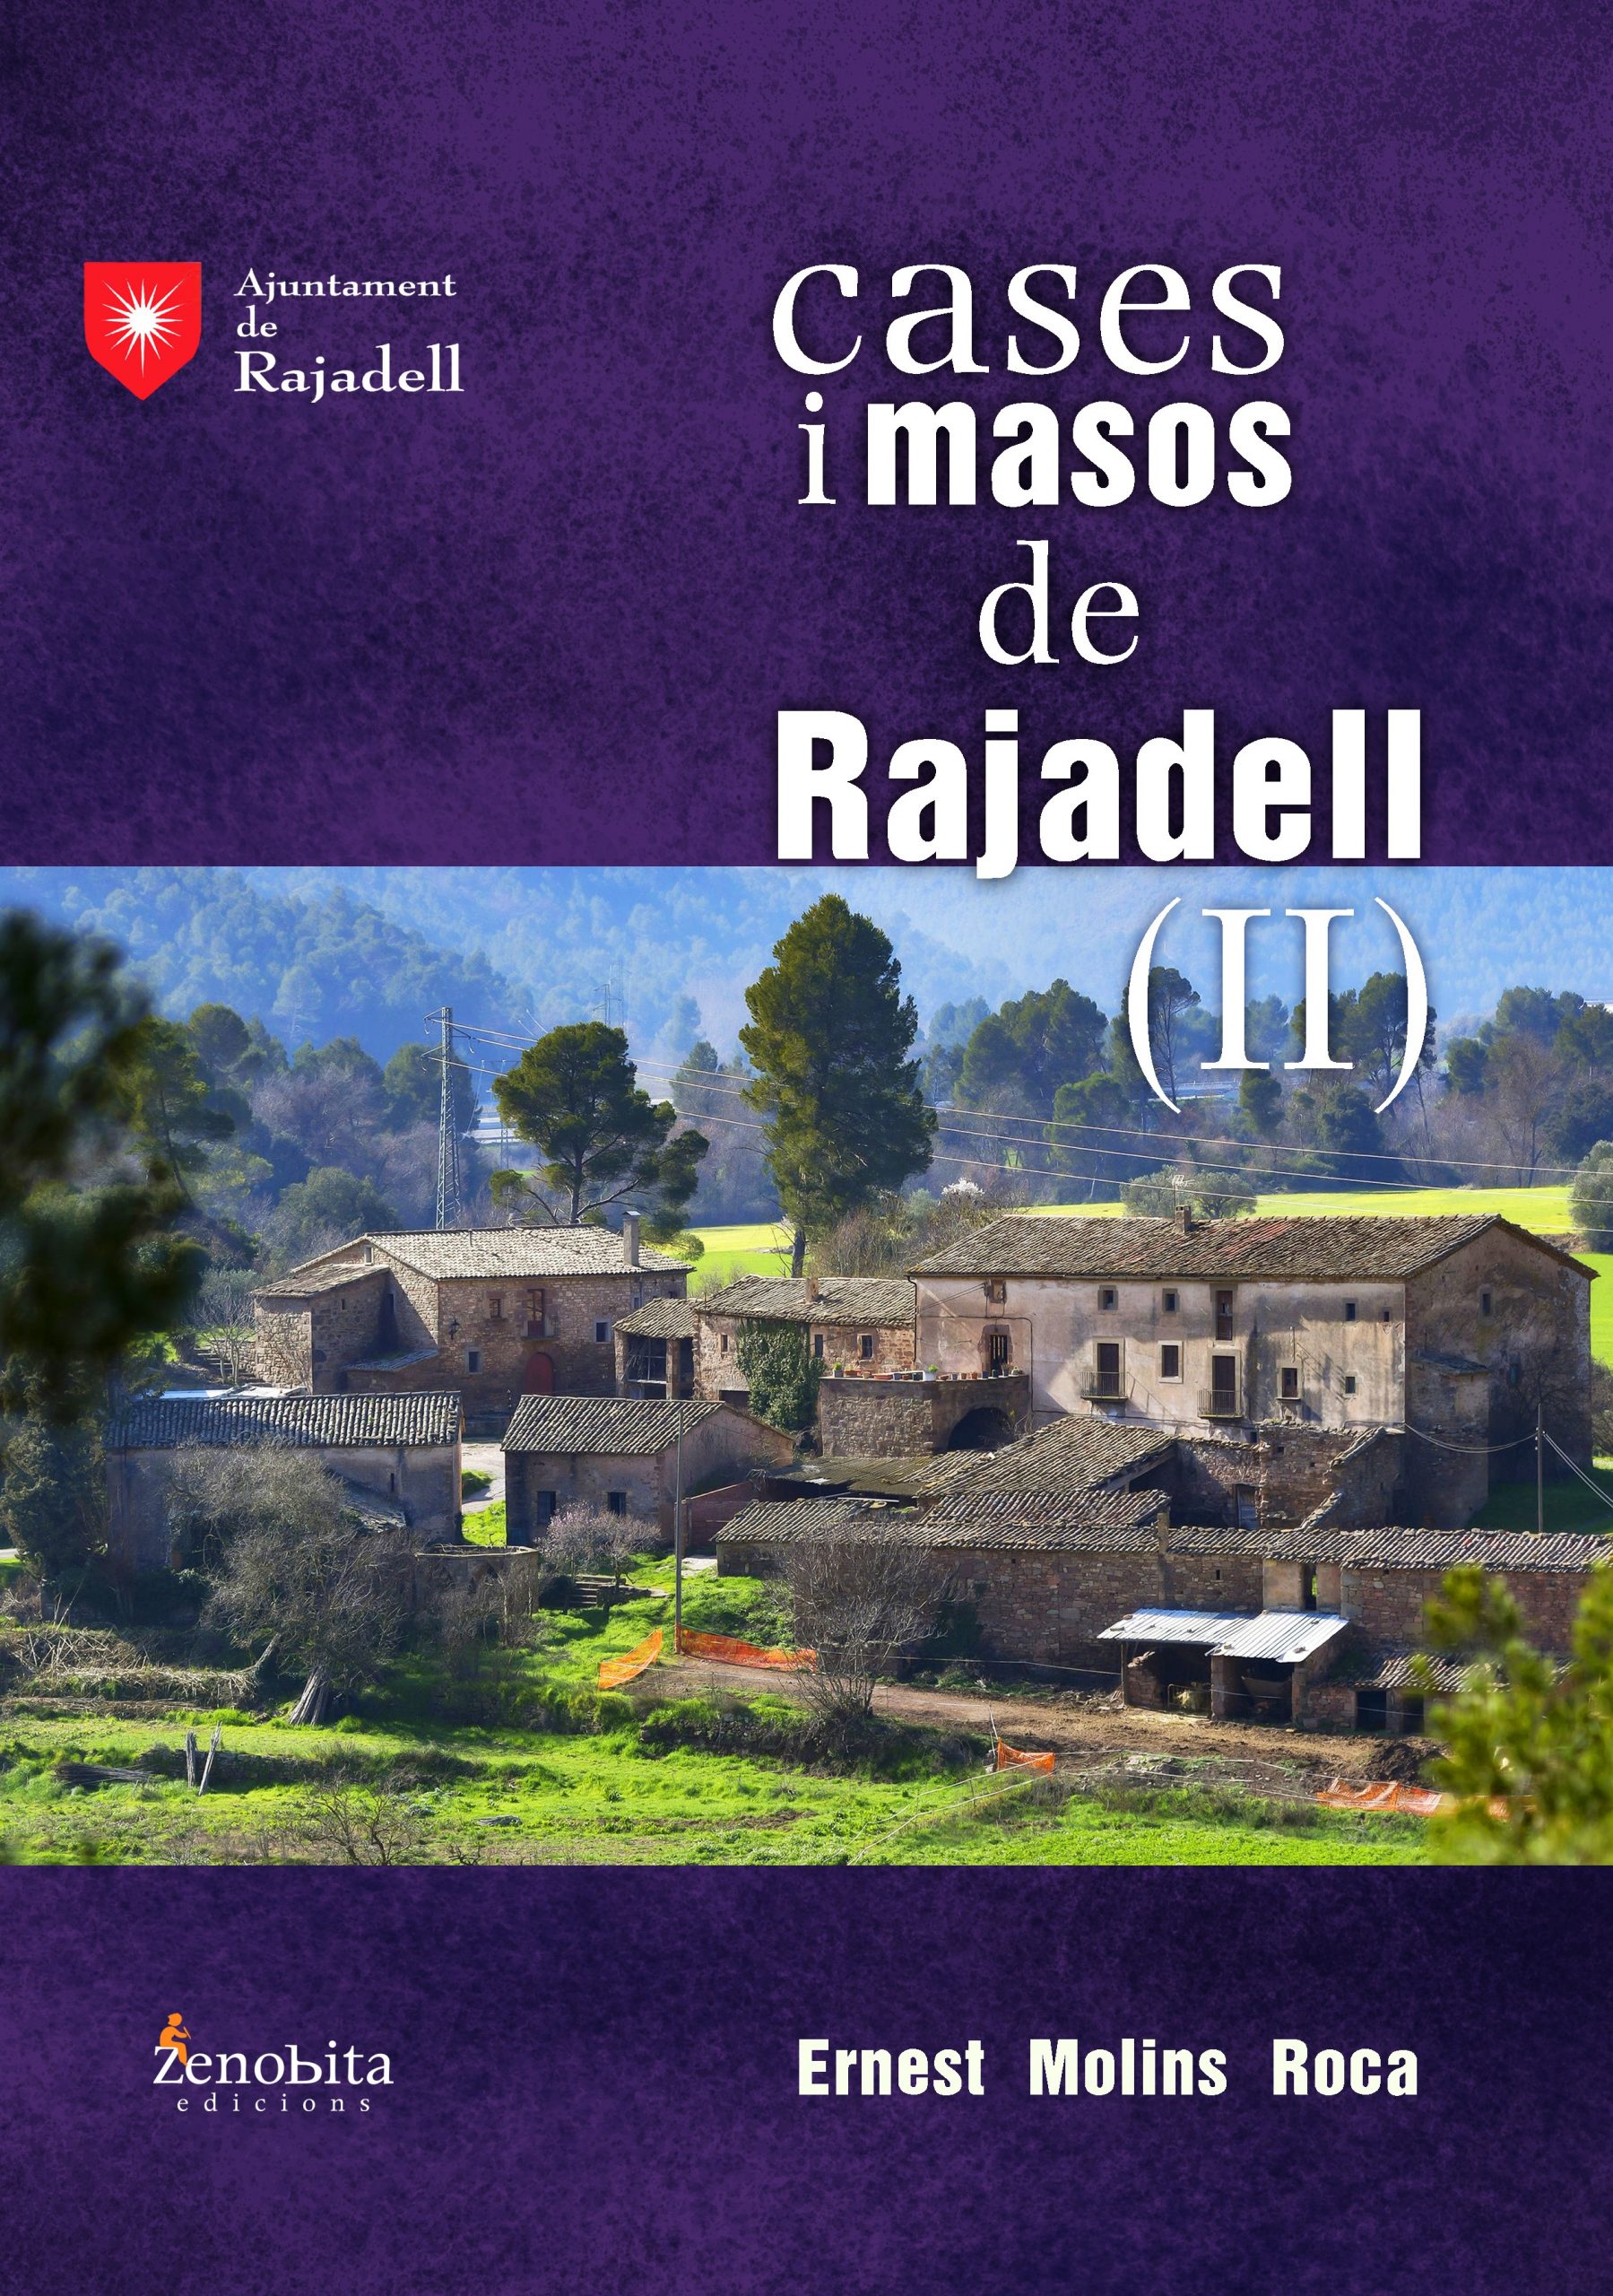 Presentació del llibre: “Cases i masos de Rajadell II”